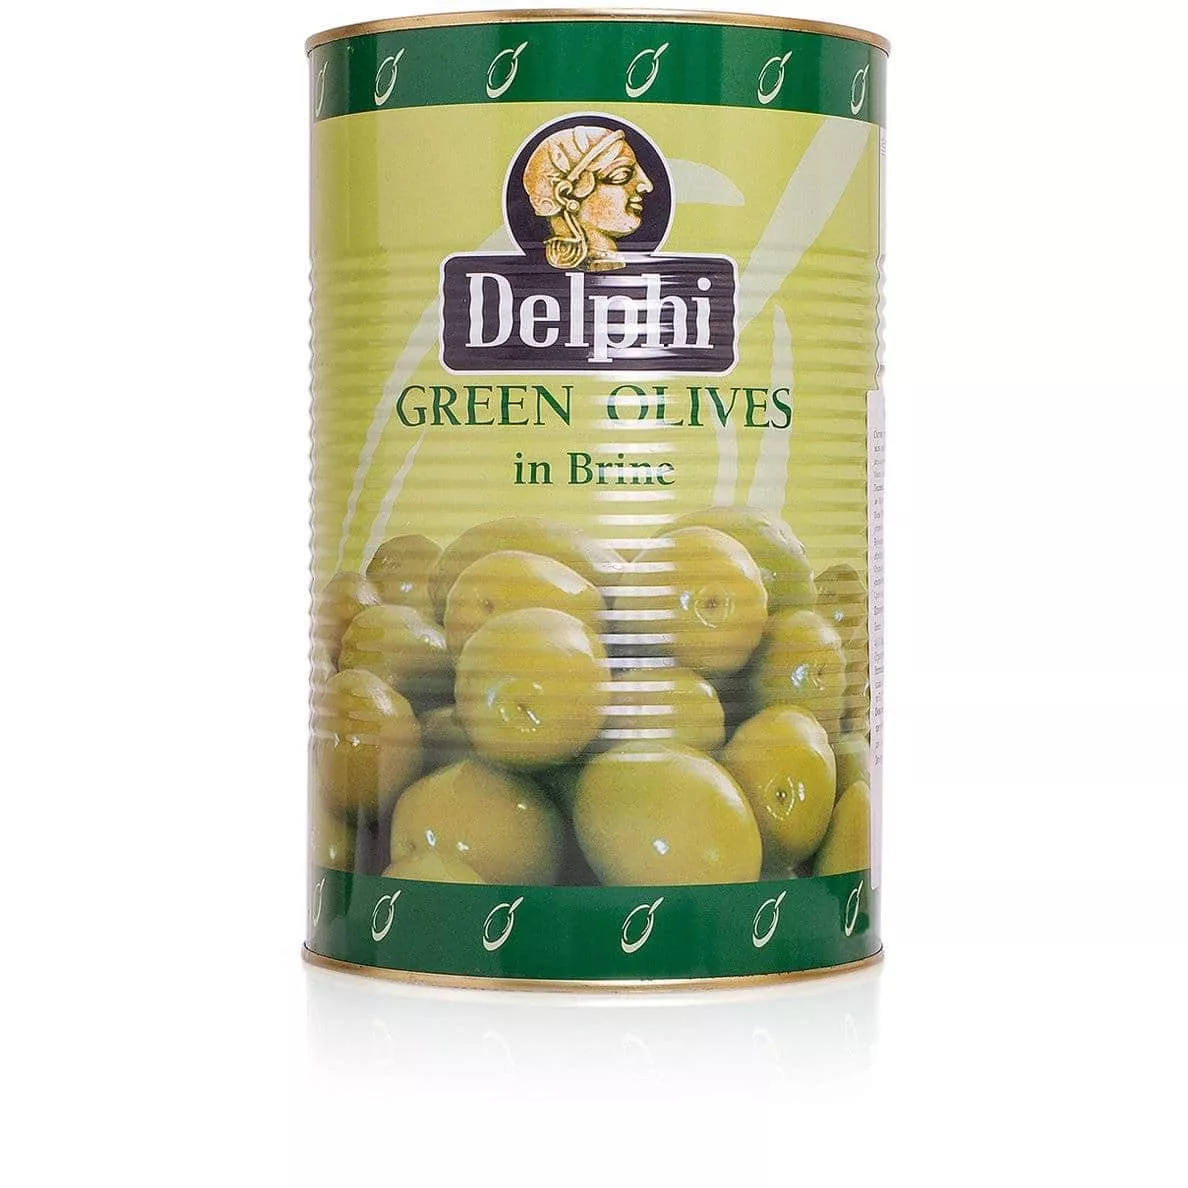 Оливки с косточкой в рассоле DELPHI Atlas 70-90 4250г